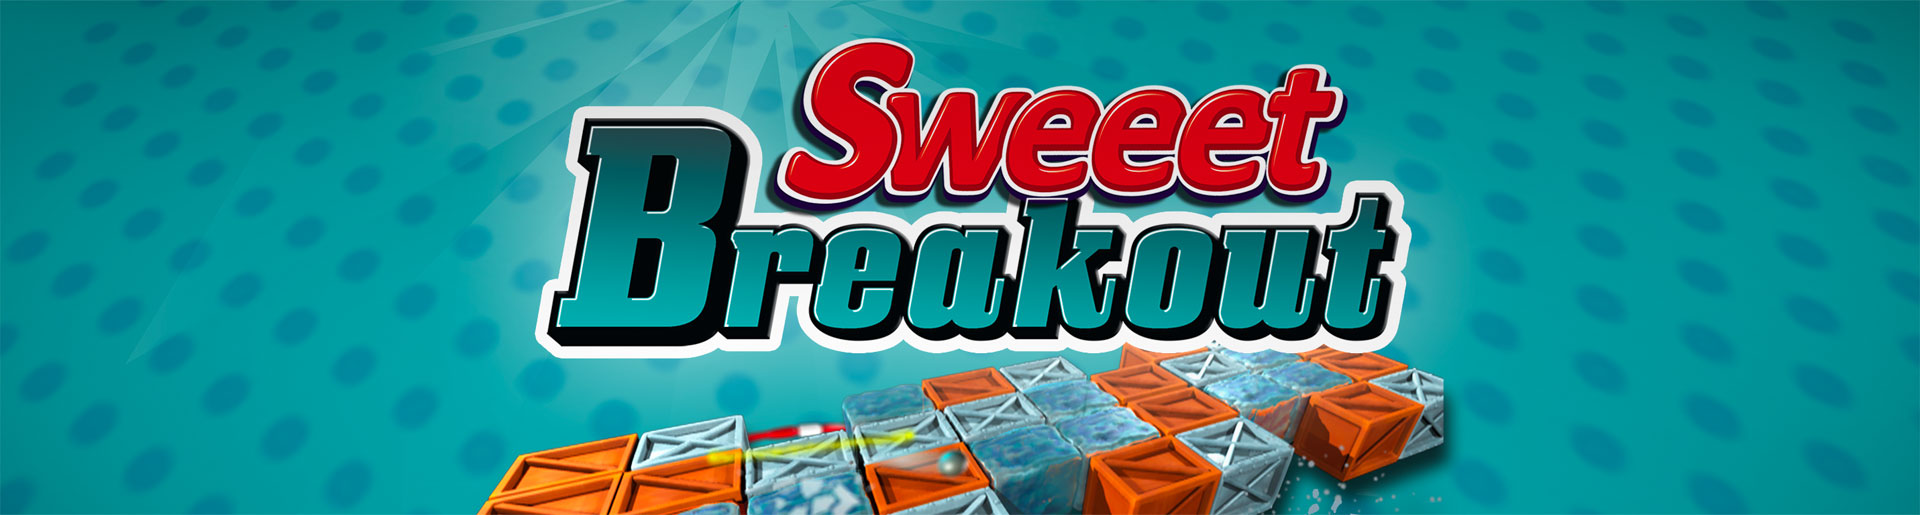 Sweeet Breakout